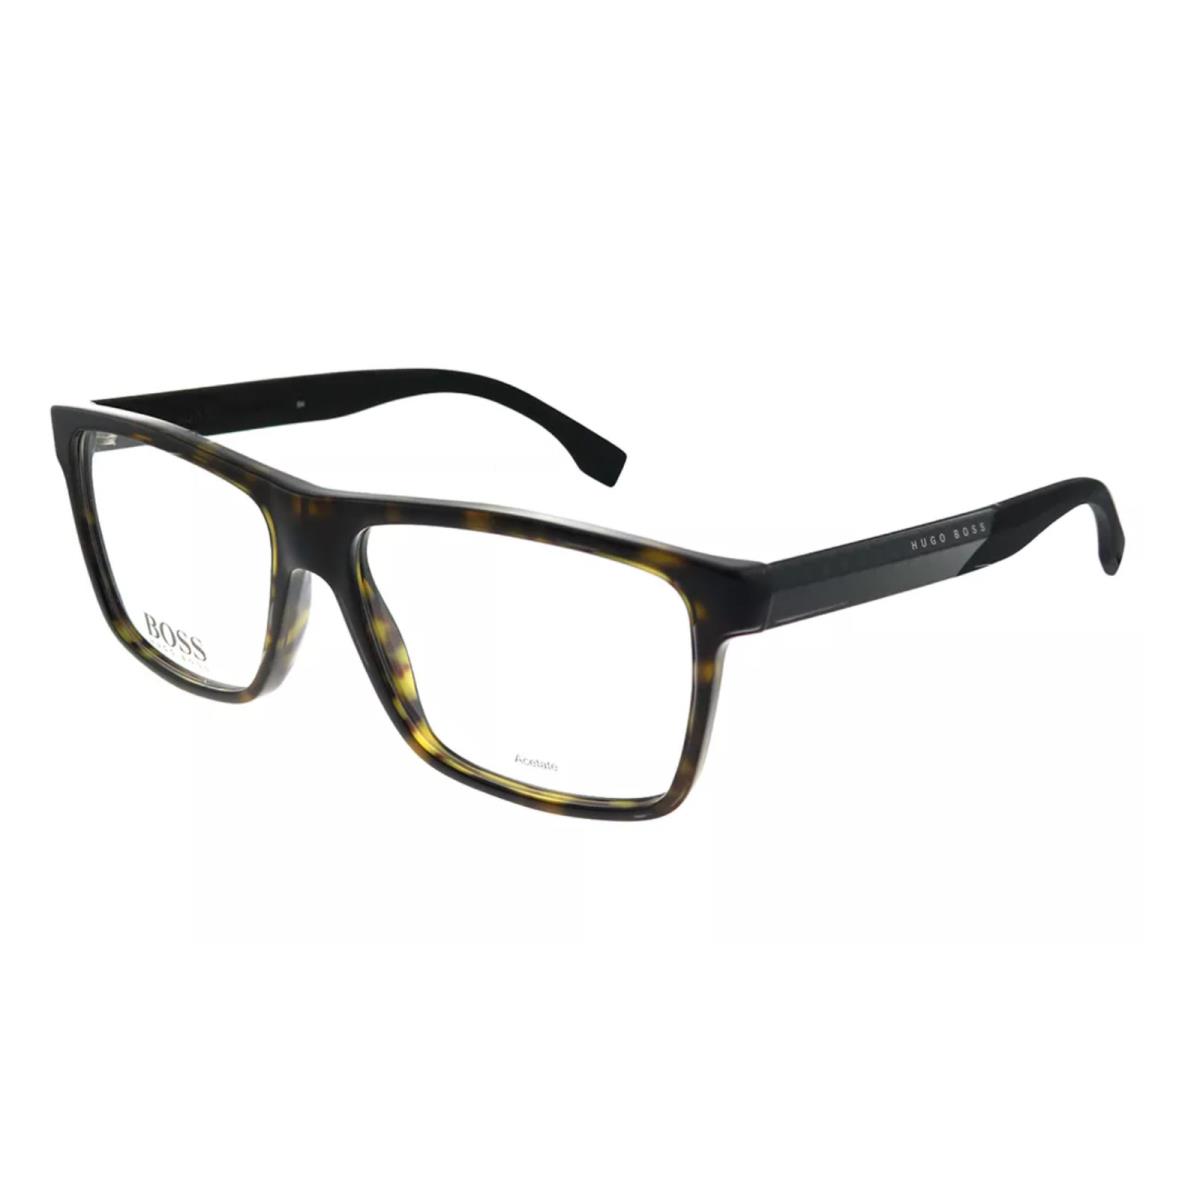 Hugo Boss Reading Glasses 0880 Hxf 55-15 Tortoise Carbon Fiber Frames Readers